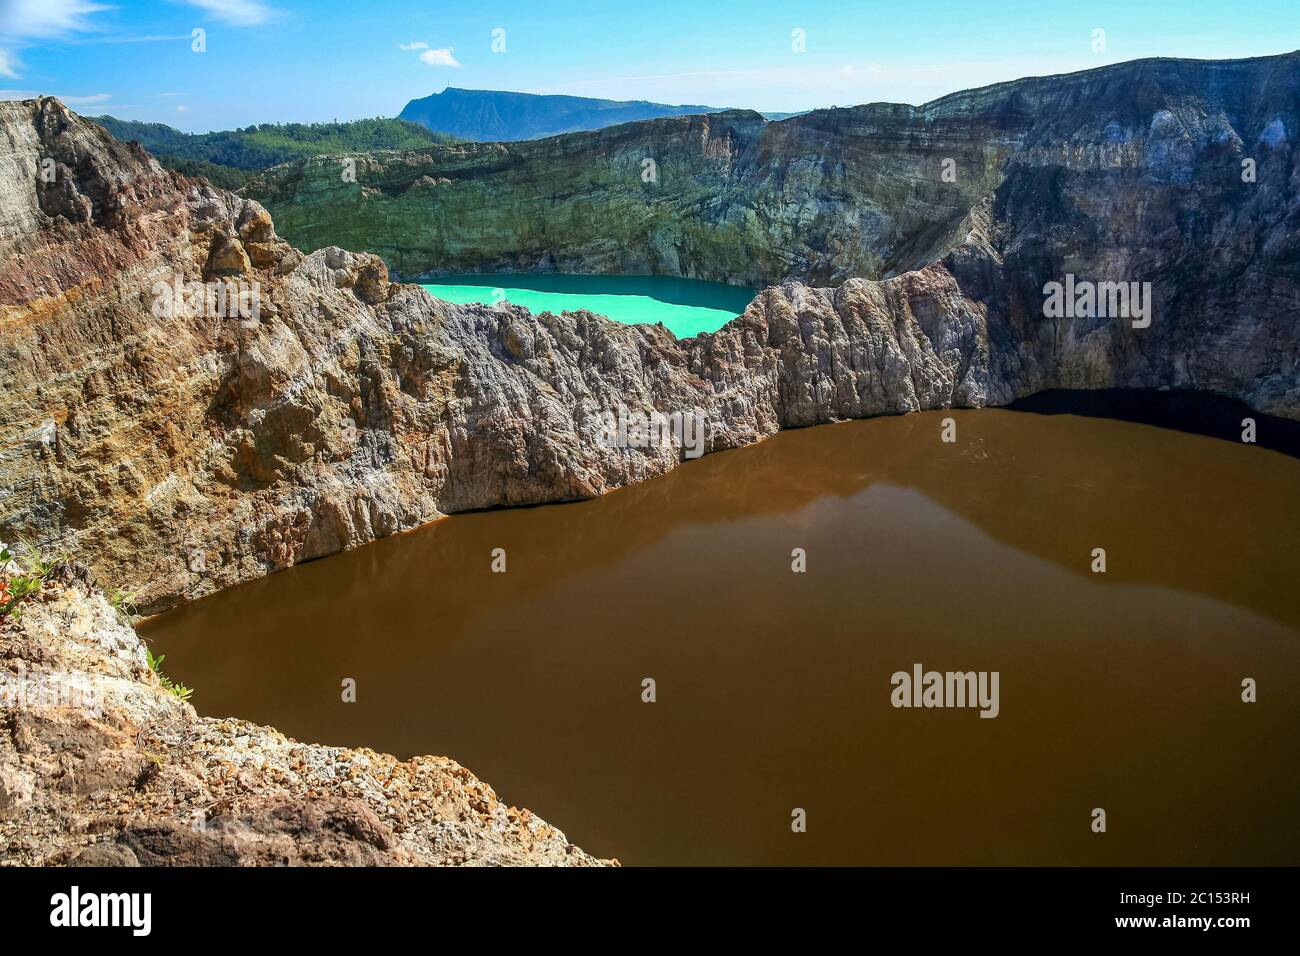 Colorful Kelimutu crater lakes Stock Photo